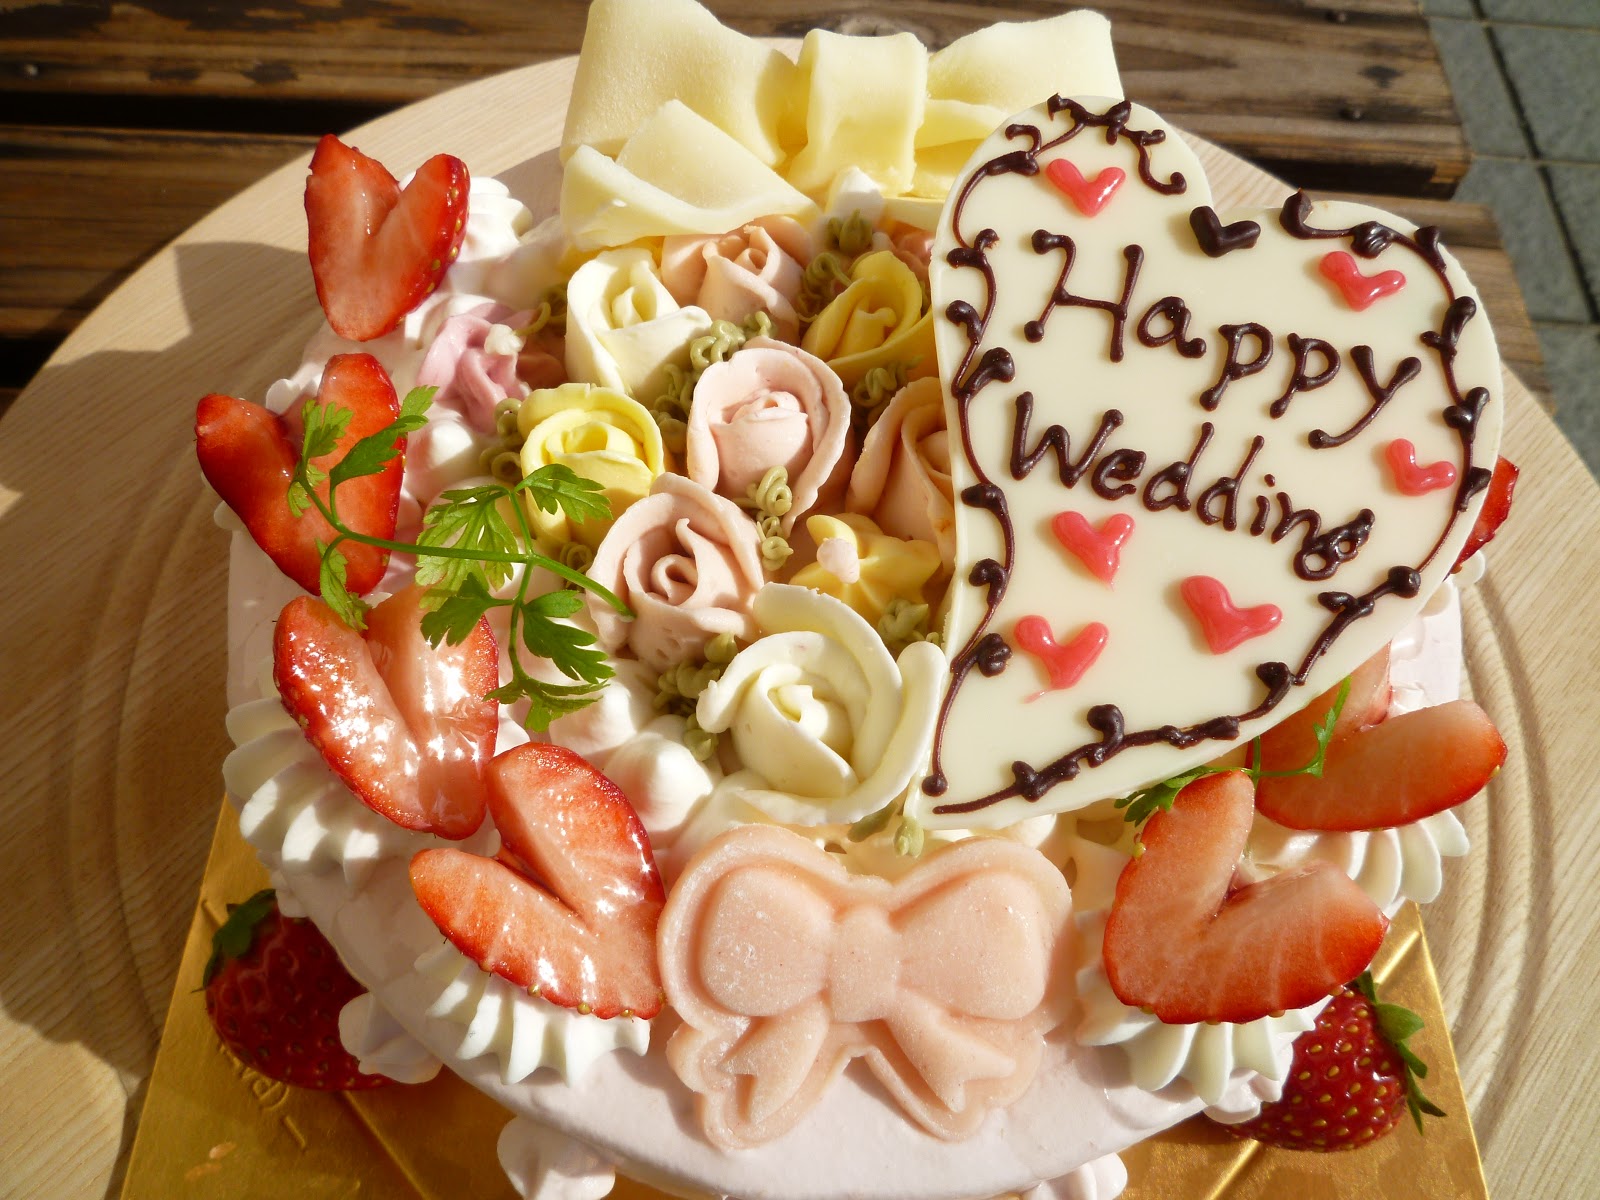 神奈川県小田原市中里のケーキ屋フロマージュのブログ 結婚祝いのデコレーションケーキ